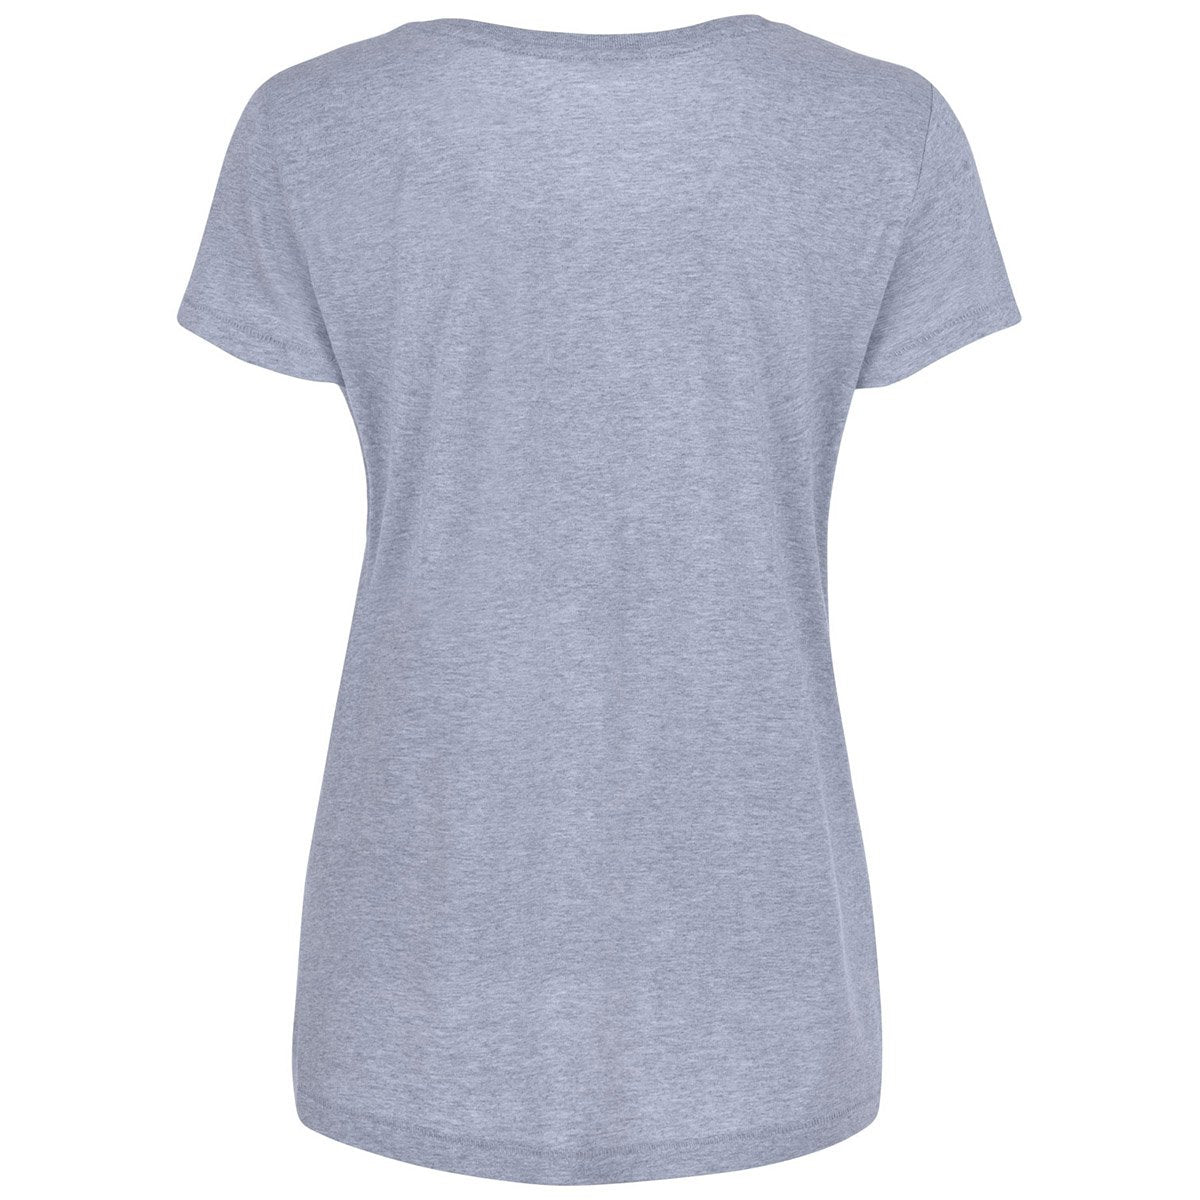 Maddox Grey Abstract Print T-shirt Front View